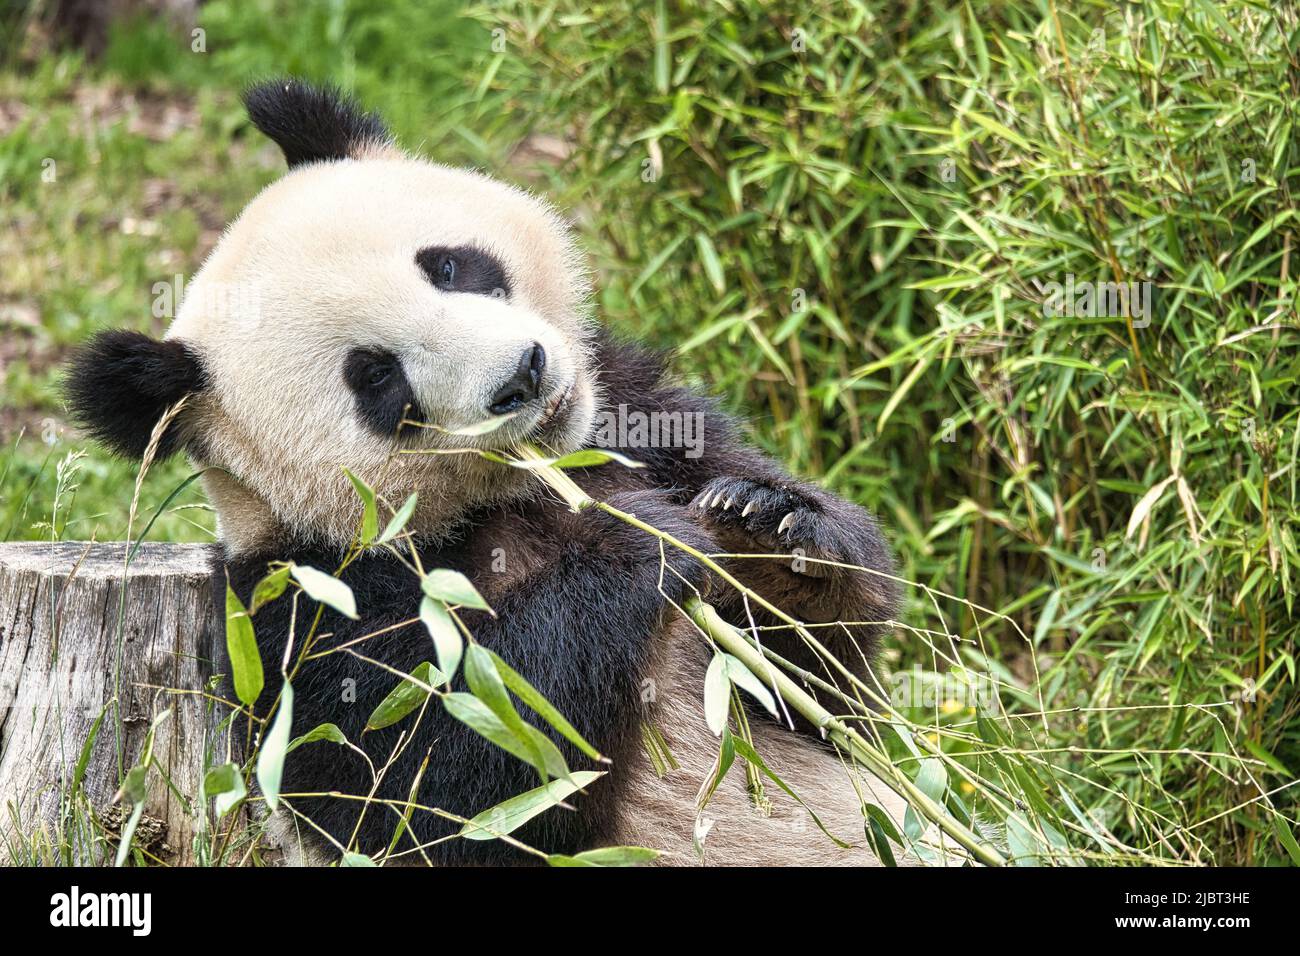 grand panda assis manger du bambou. Espèces en voie de disparition. Un mammifère noir et blanc qui ressemble à un ours en peluche. Photo profonde d'un ours rare. Banque D'Images